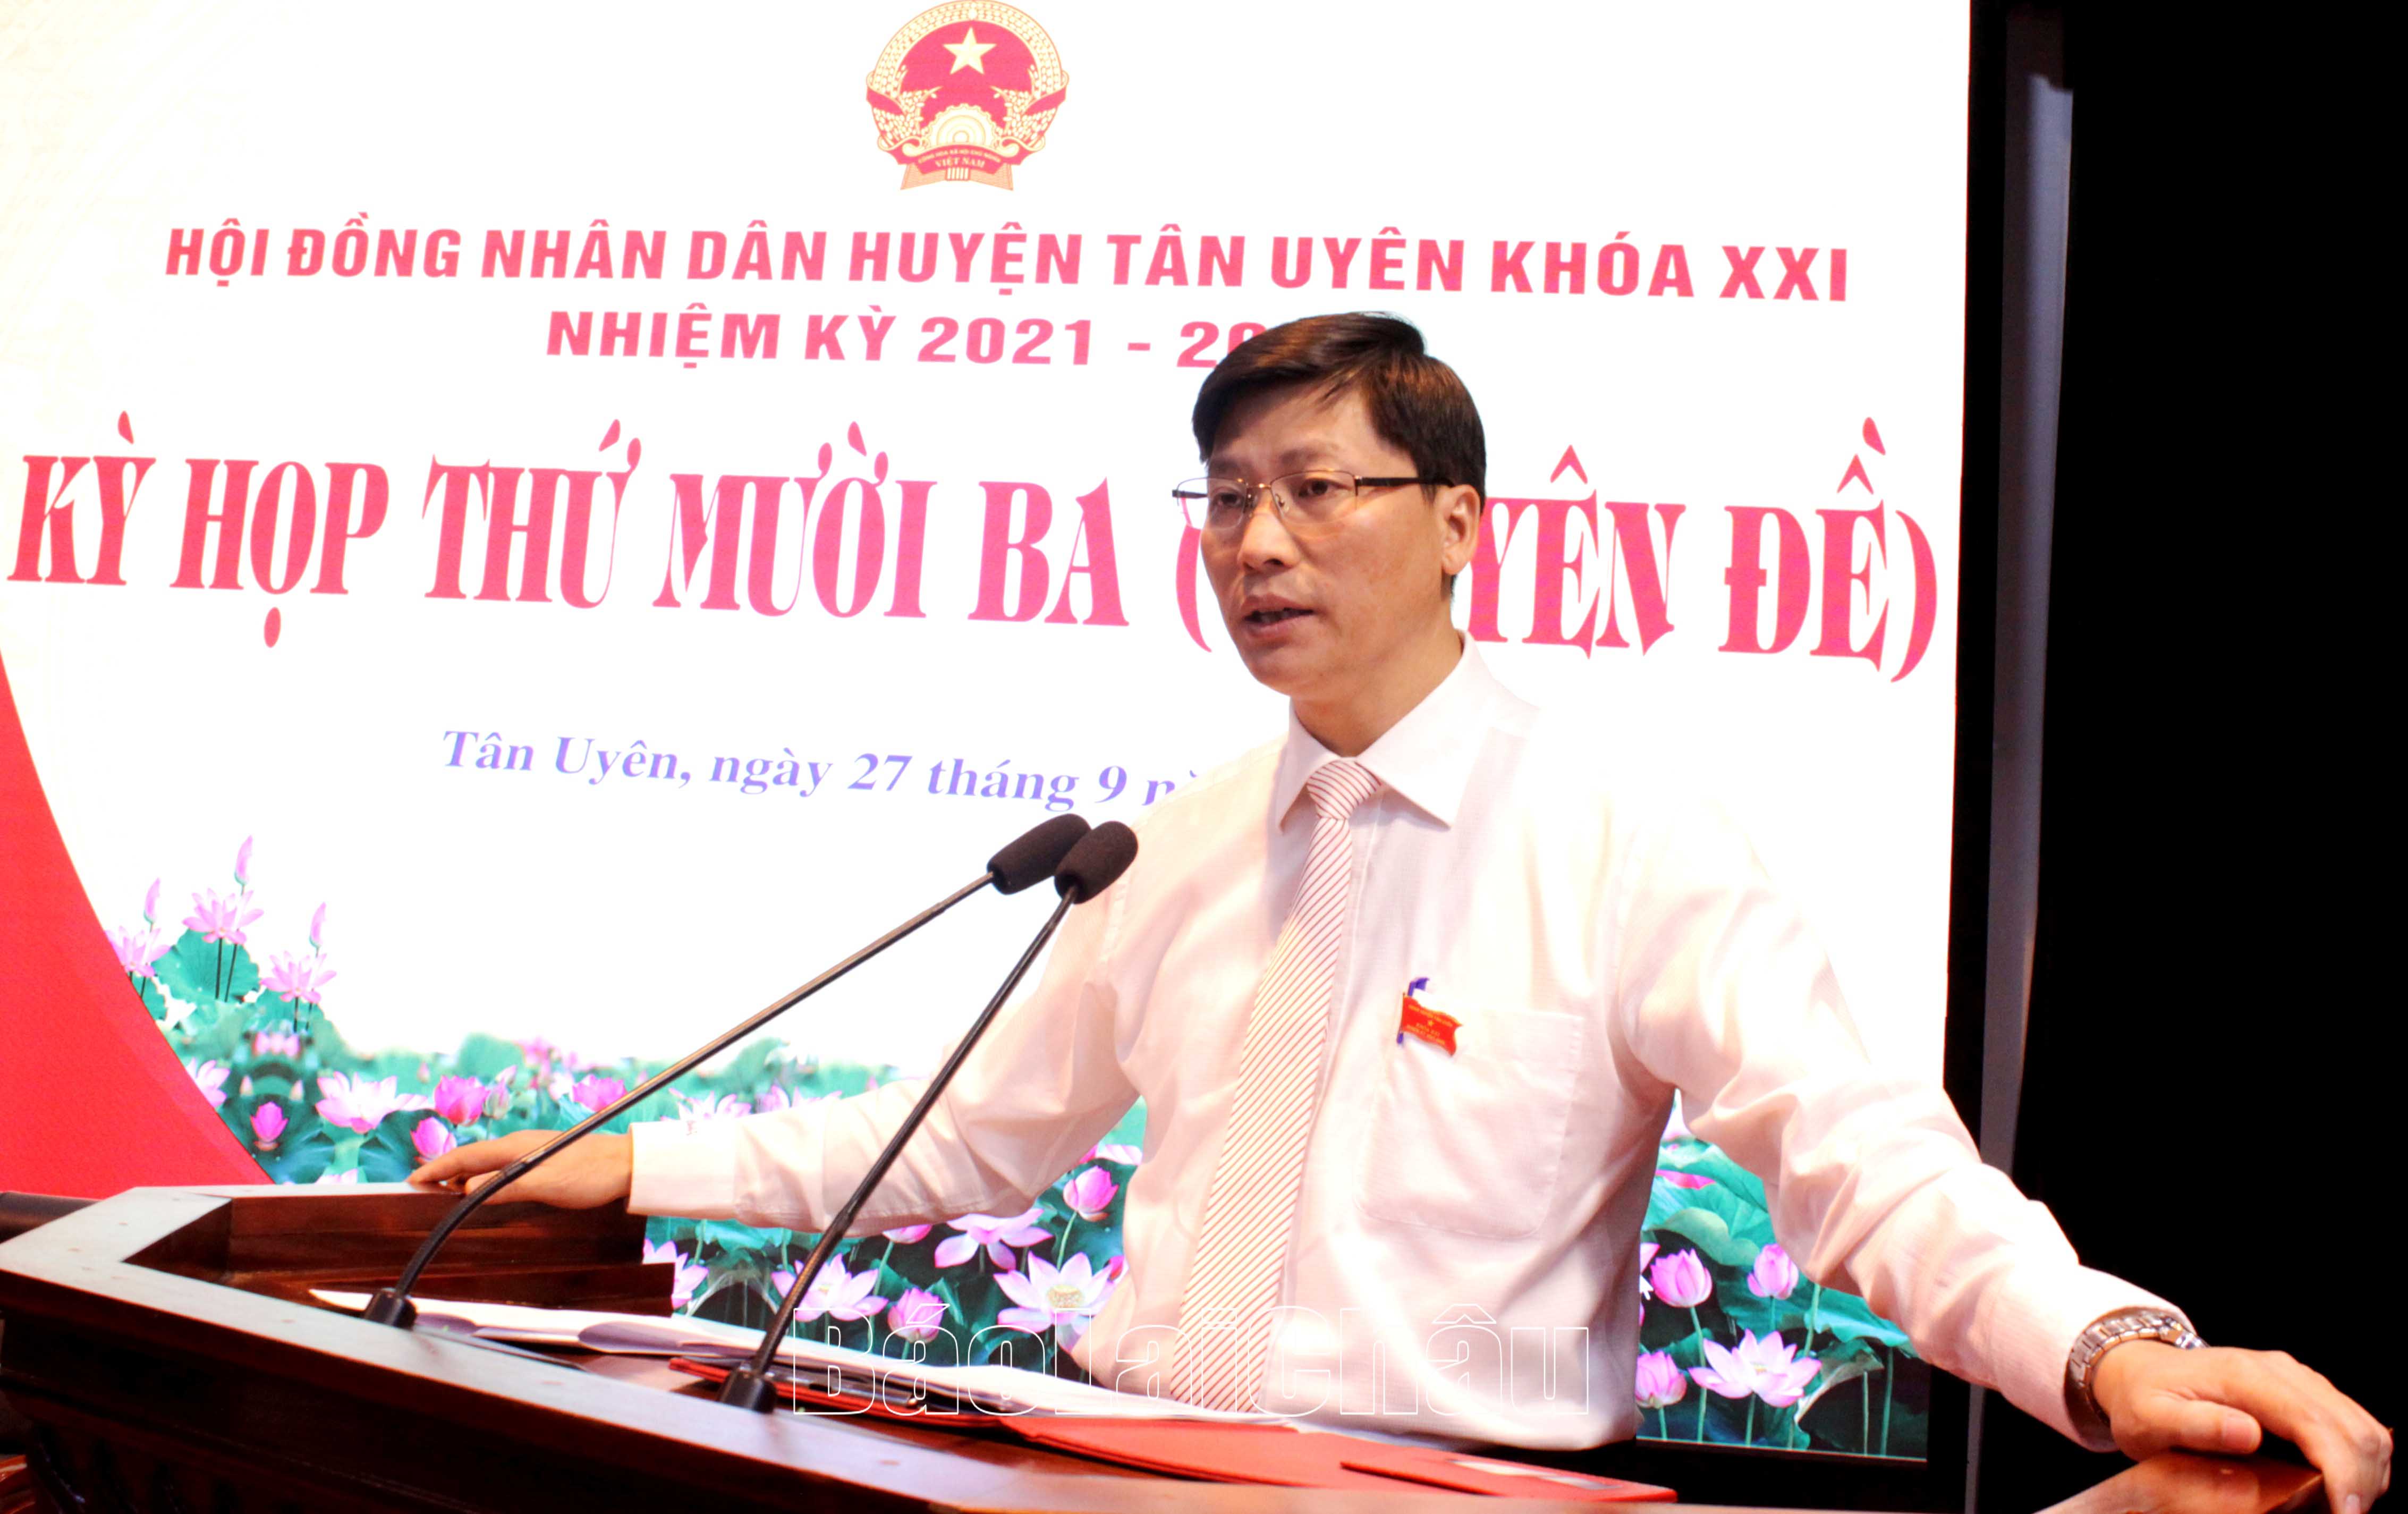 Đồng chí Bùi Huy Phương - Tỉnh ủy viên, Bí thư Huyện ủy, Chủ tịch HĐND huyện phát biểu khai mạc kỳ họp.